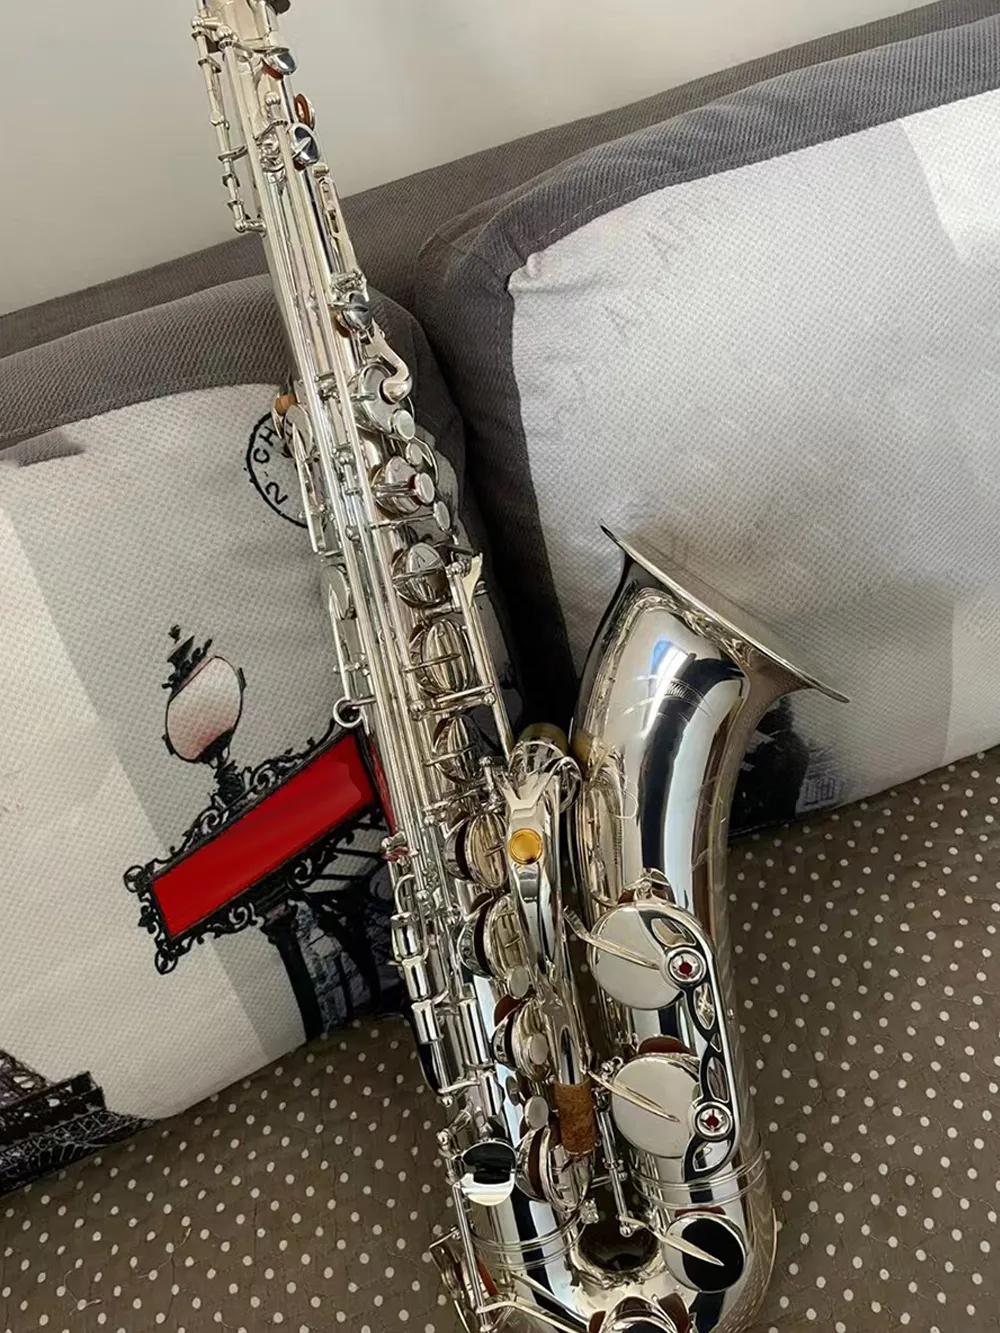 Argent YTS-82ZS structure saxophone ténor professionnel si bémol fabrication tout argent sensation confortable sax ténor son de haute qualité